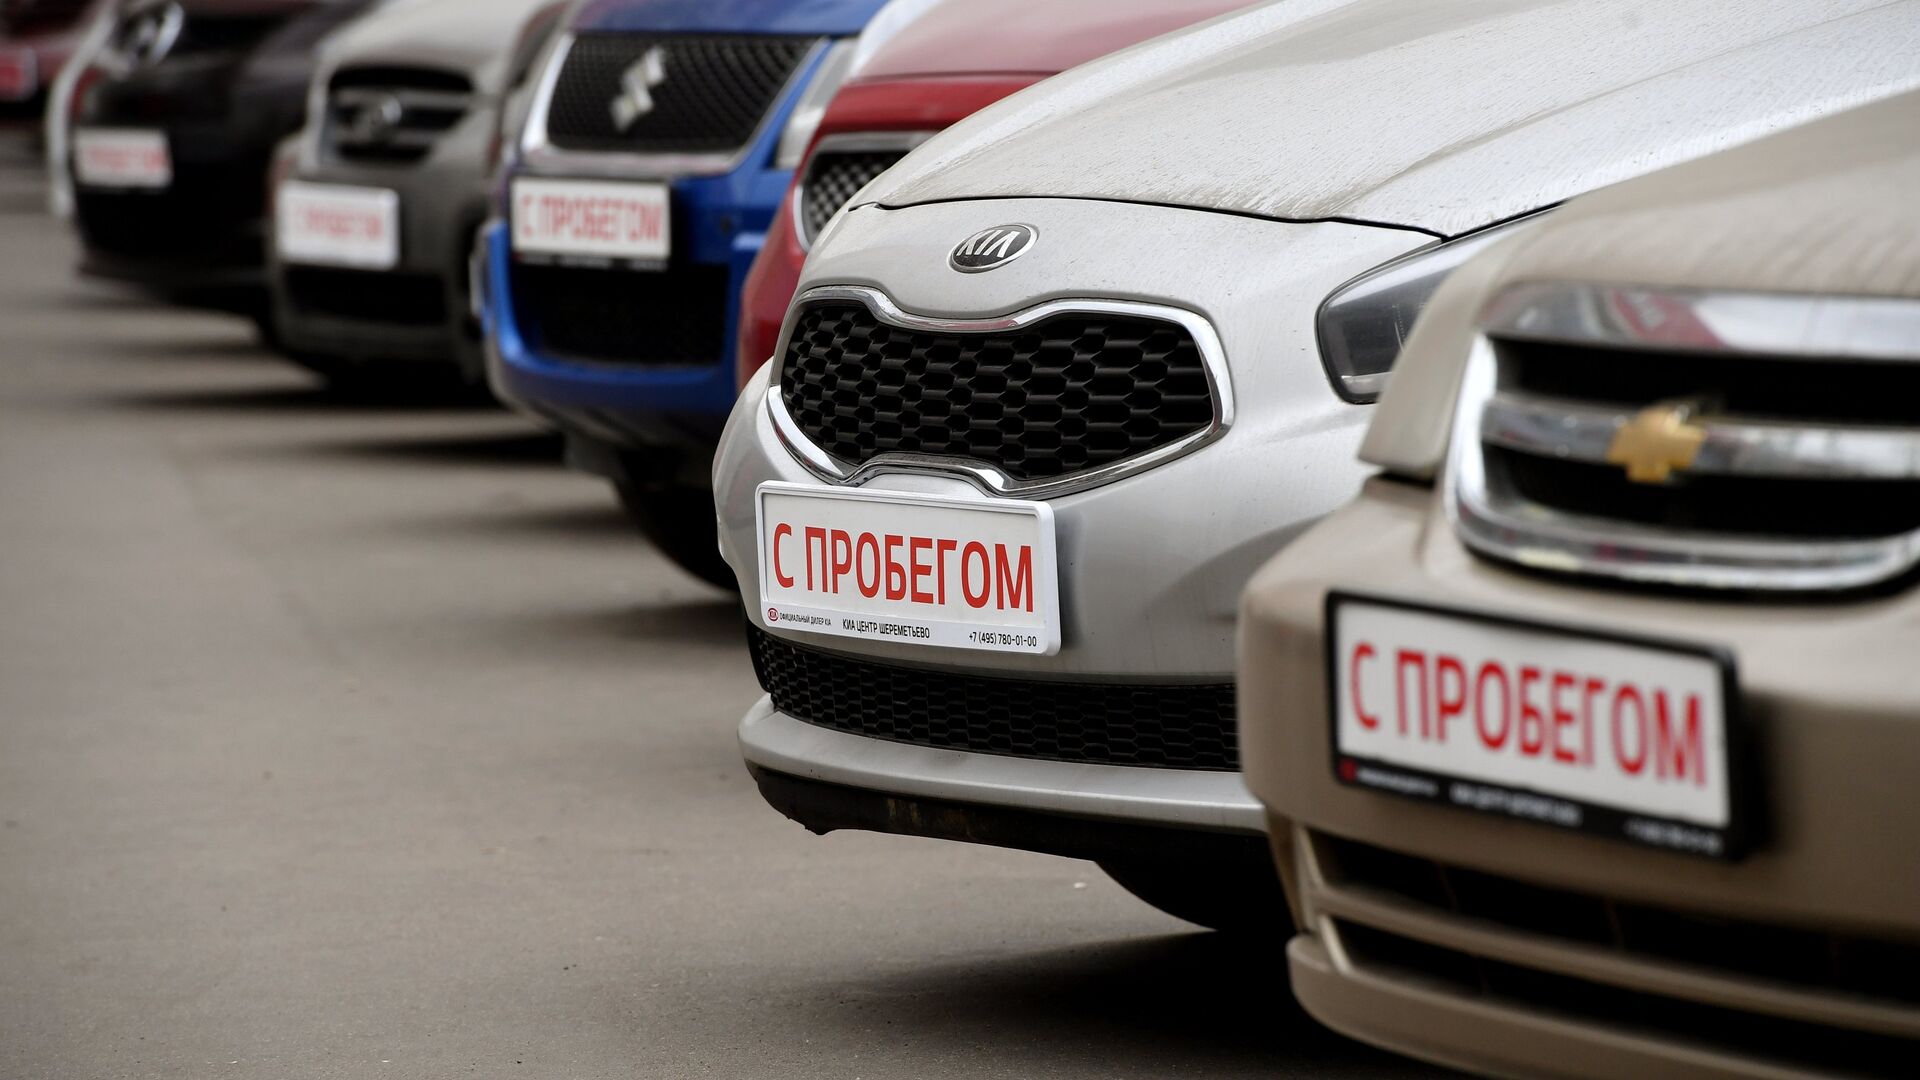 В России назвали сроки изменения правил купли-продажи машин с пробегом